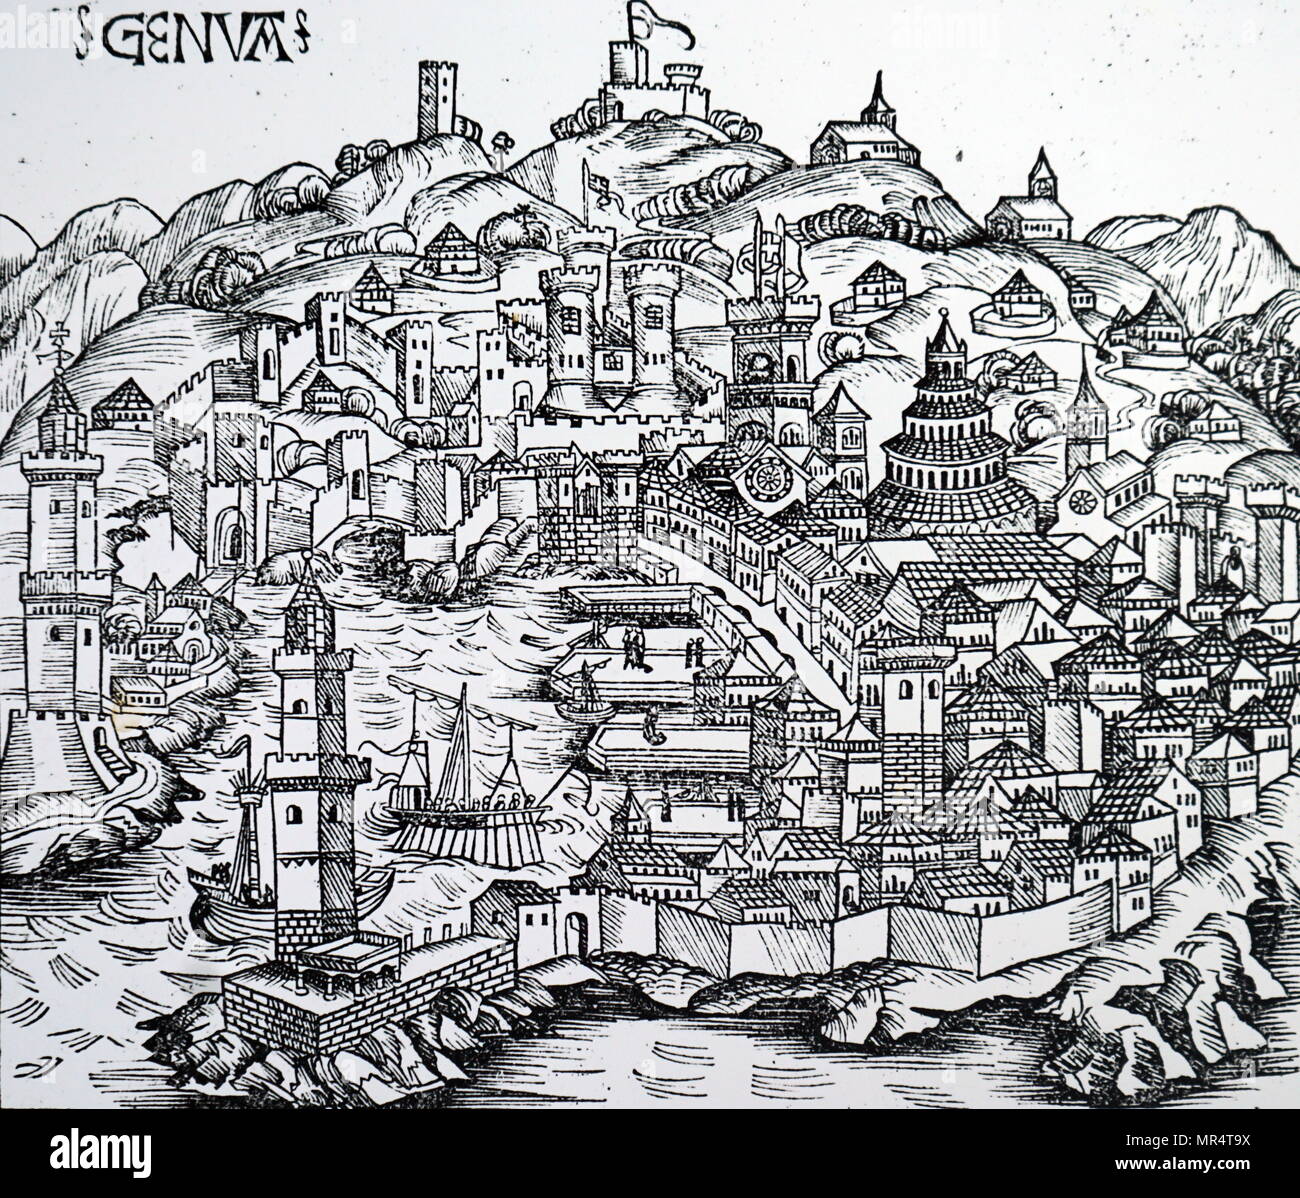 Gravure sur bois représentant un aperçu de Genève, montrant une cuisine et un voilier dans le port, et les jetées et les entrepôts à quai pour l'entreposage des marchandises déchargées de bateaux commerciaux. En date du 15e siècle Banque D'Images